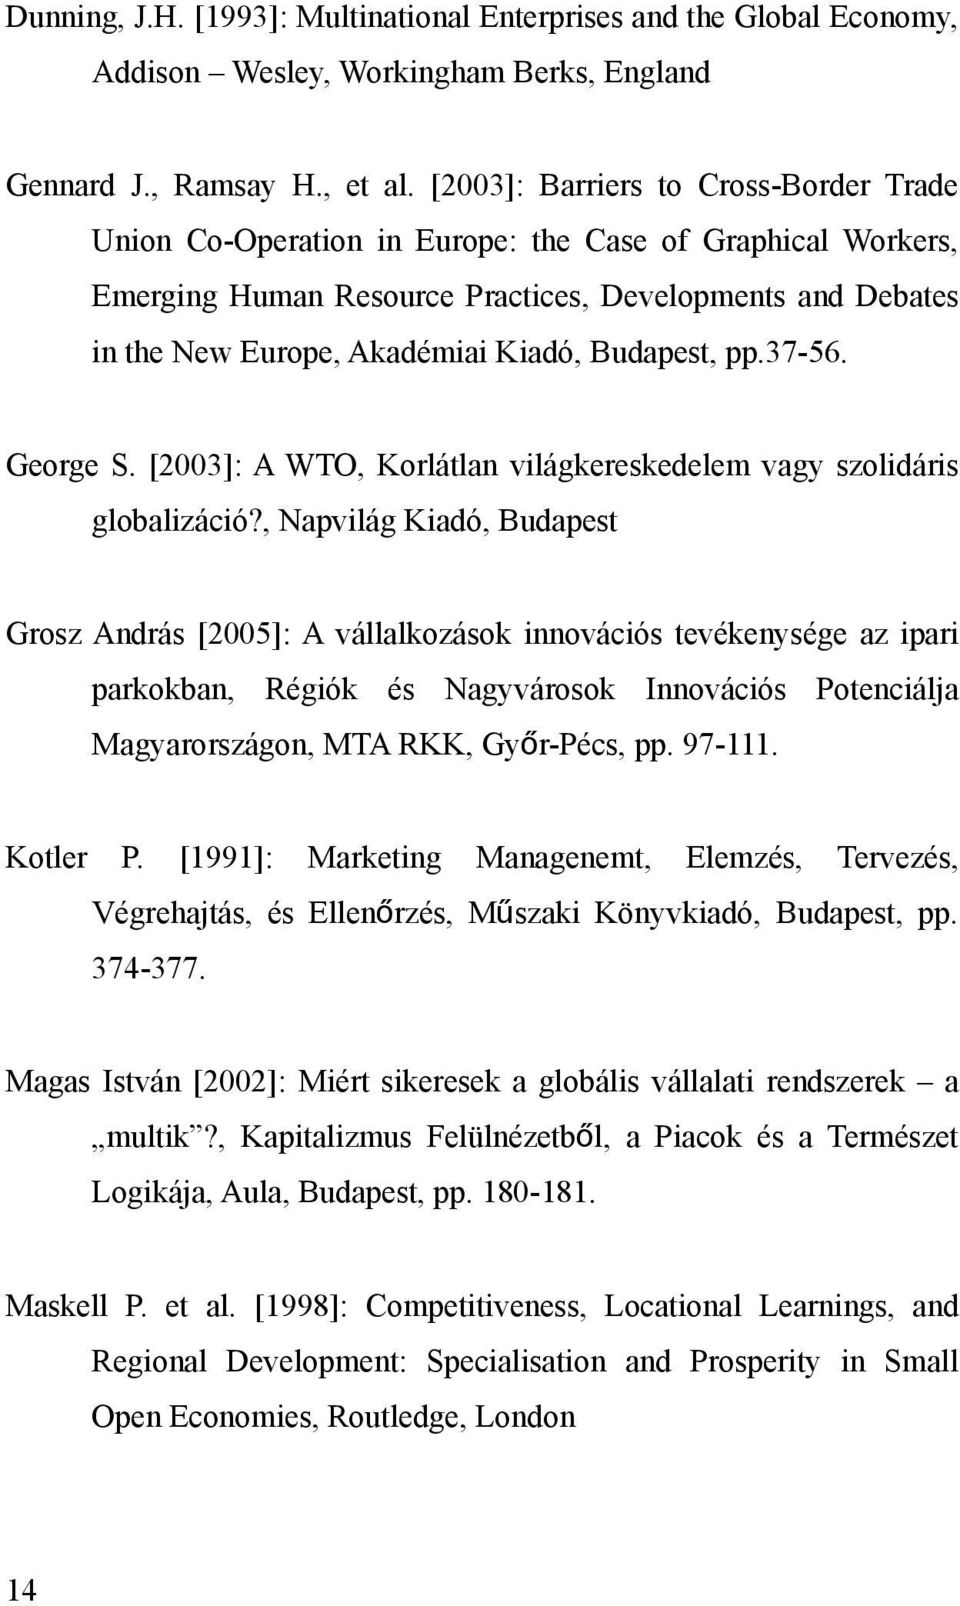 Budapest, pp.37-56. George S. [2003]: A WTO, Korlátlan világkereskedelem vagy szolidáris globalizáció?